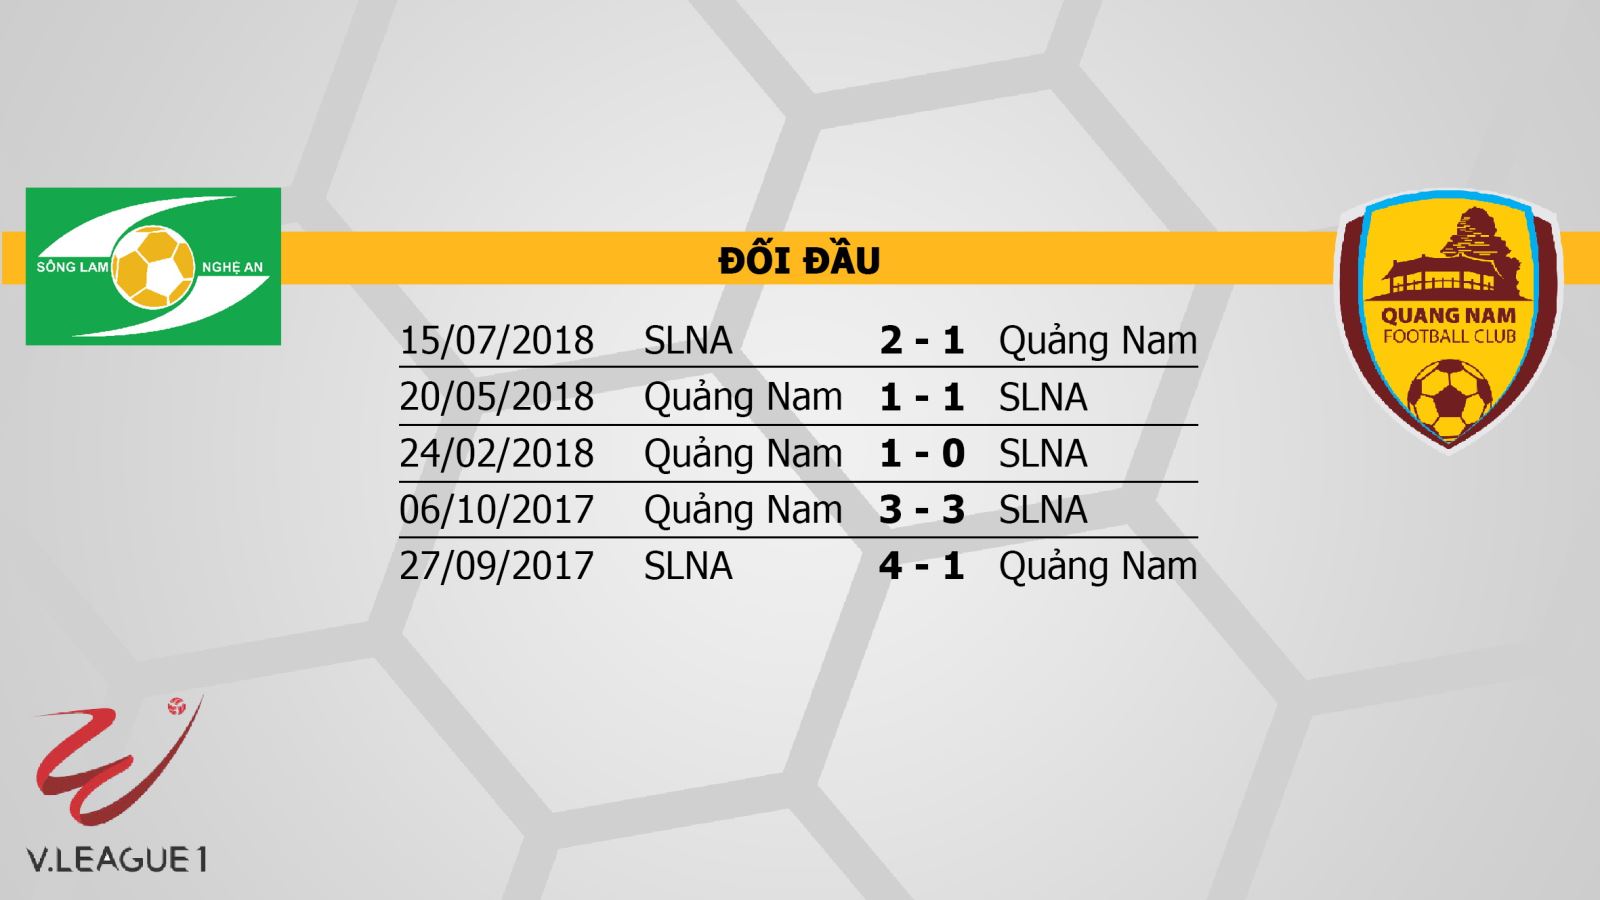 Kèo bóng đá, Soi kèo SLNA vs Quảng Nam, kèo SLNA vs Quảng Nam, kèo SLNA Quảng Nam, kèo SLNA, trực tiếp bóng đá, trực tiếp SLNA vs Quảng Nam, truc tiep bong da